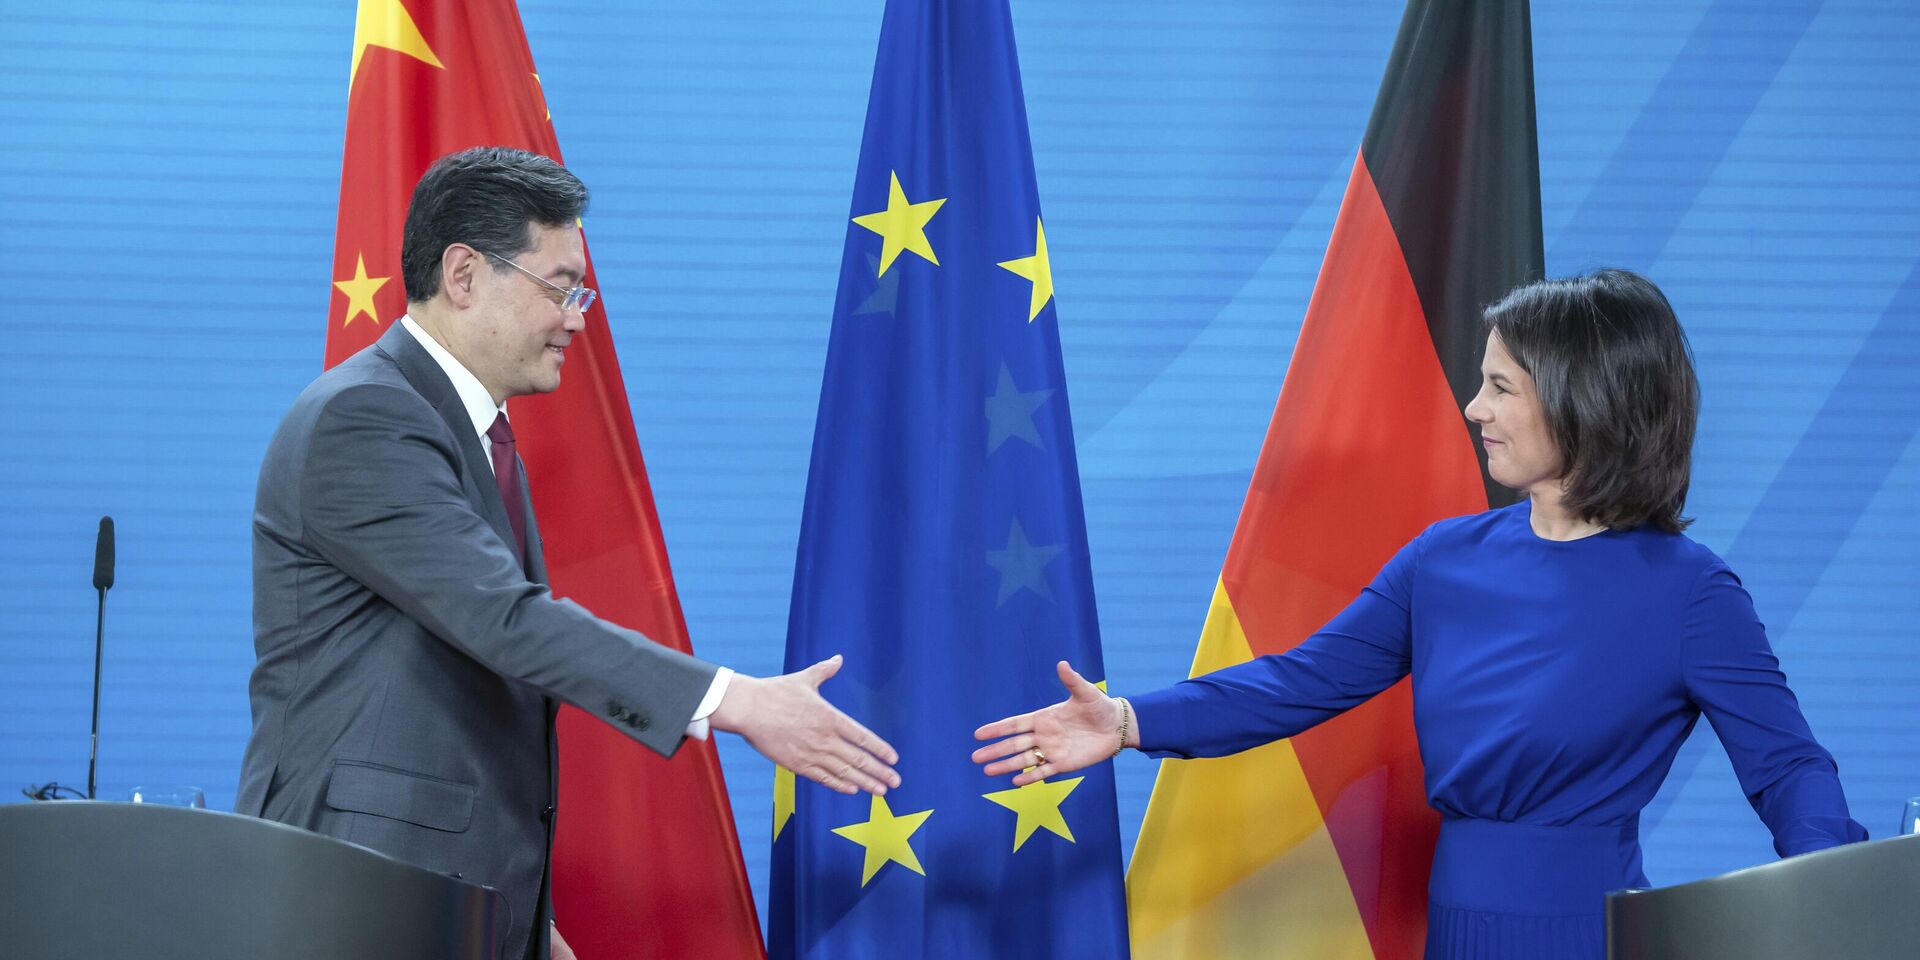 Министр иностранных дел Германии Анналена Бербок и министр иностранных дел Китая Цинь Ган во время пресс-конференции в Берлине, 9 мая 2023 года - ИноСМИ, 1920, 21.09.2023